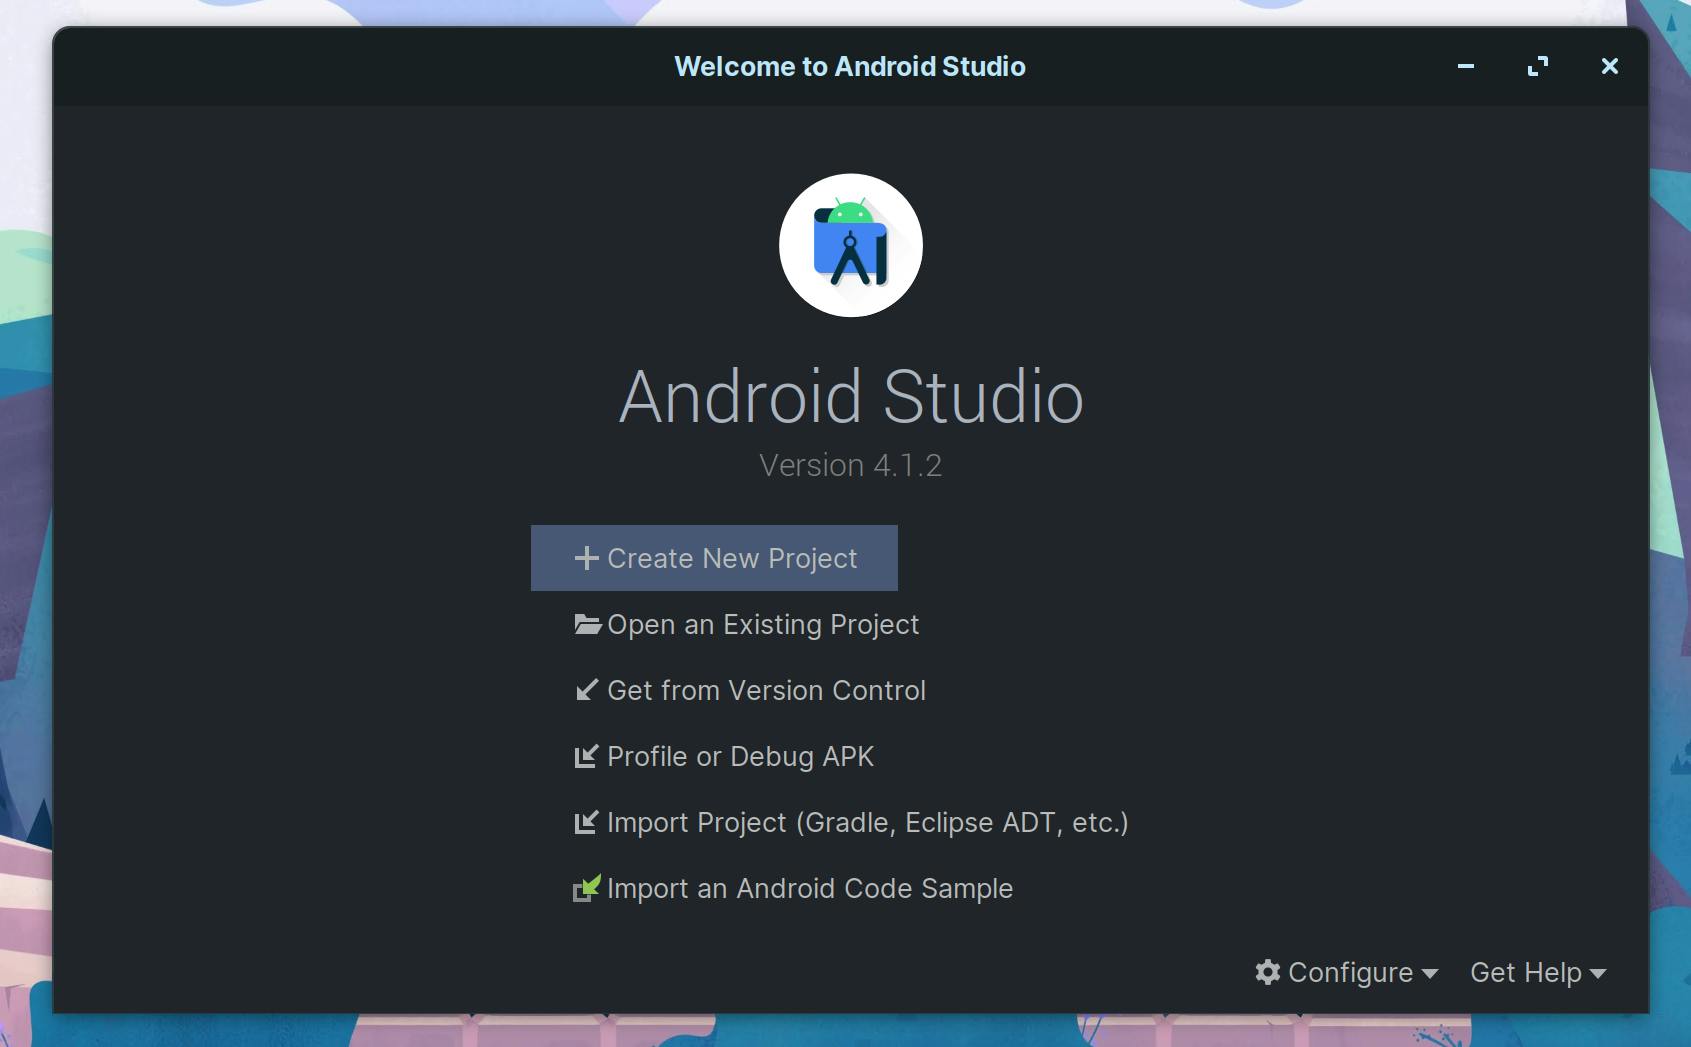 Android Studio 4.1.2